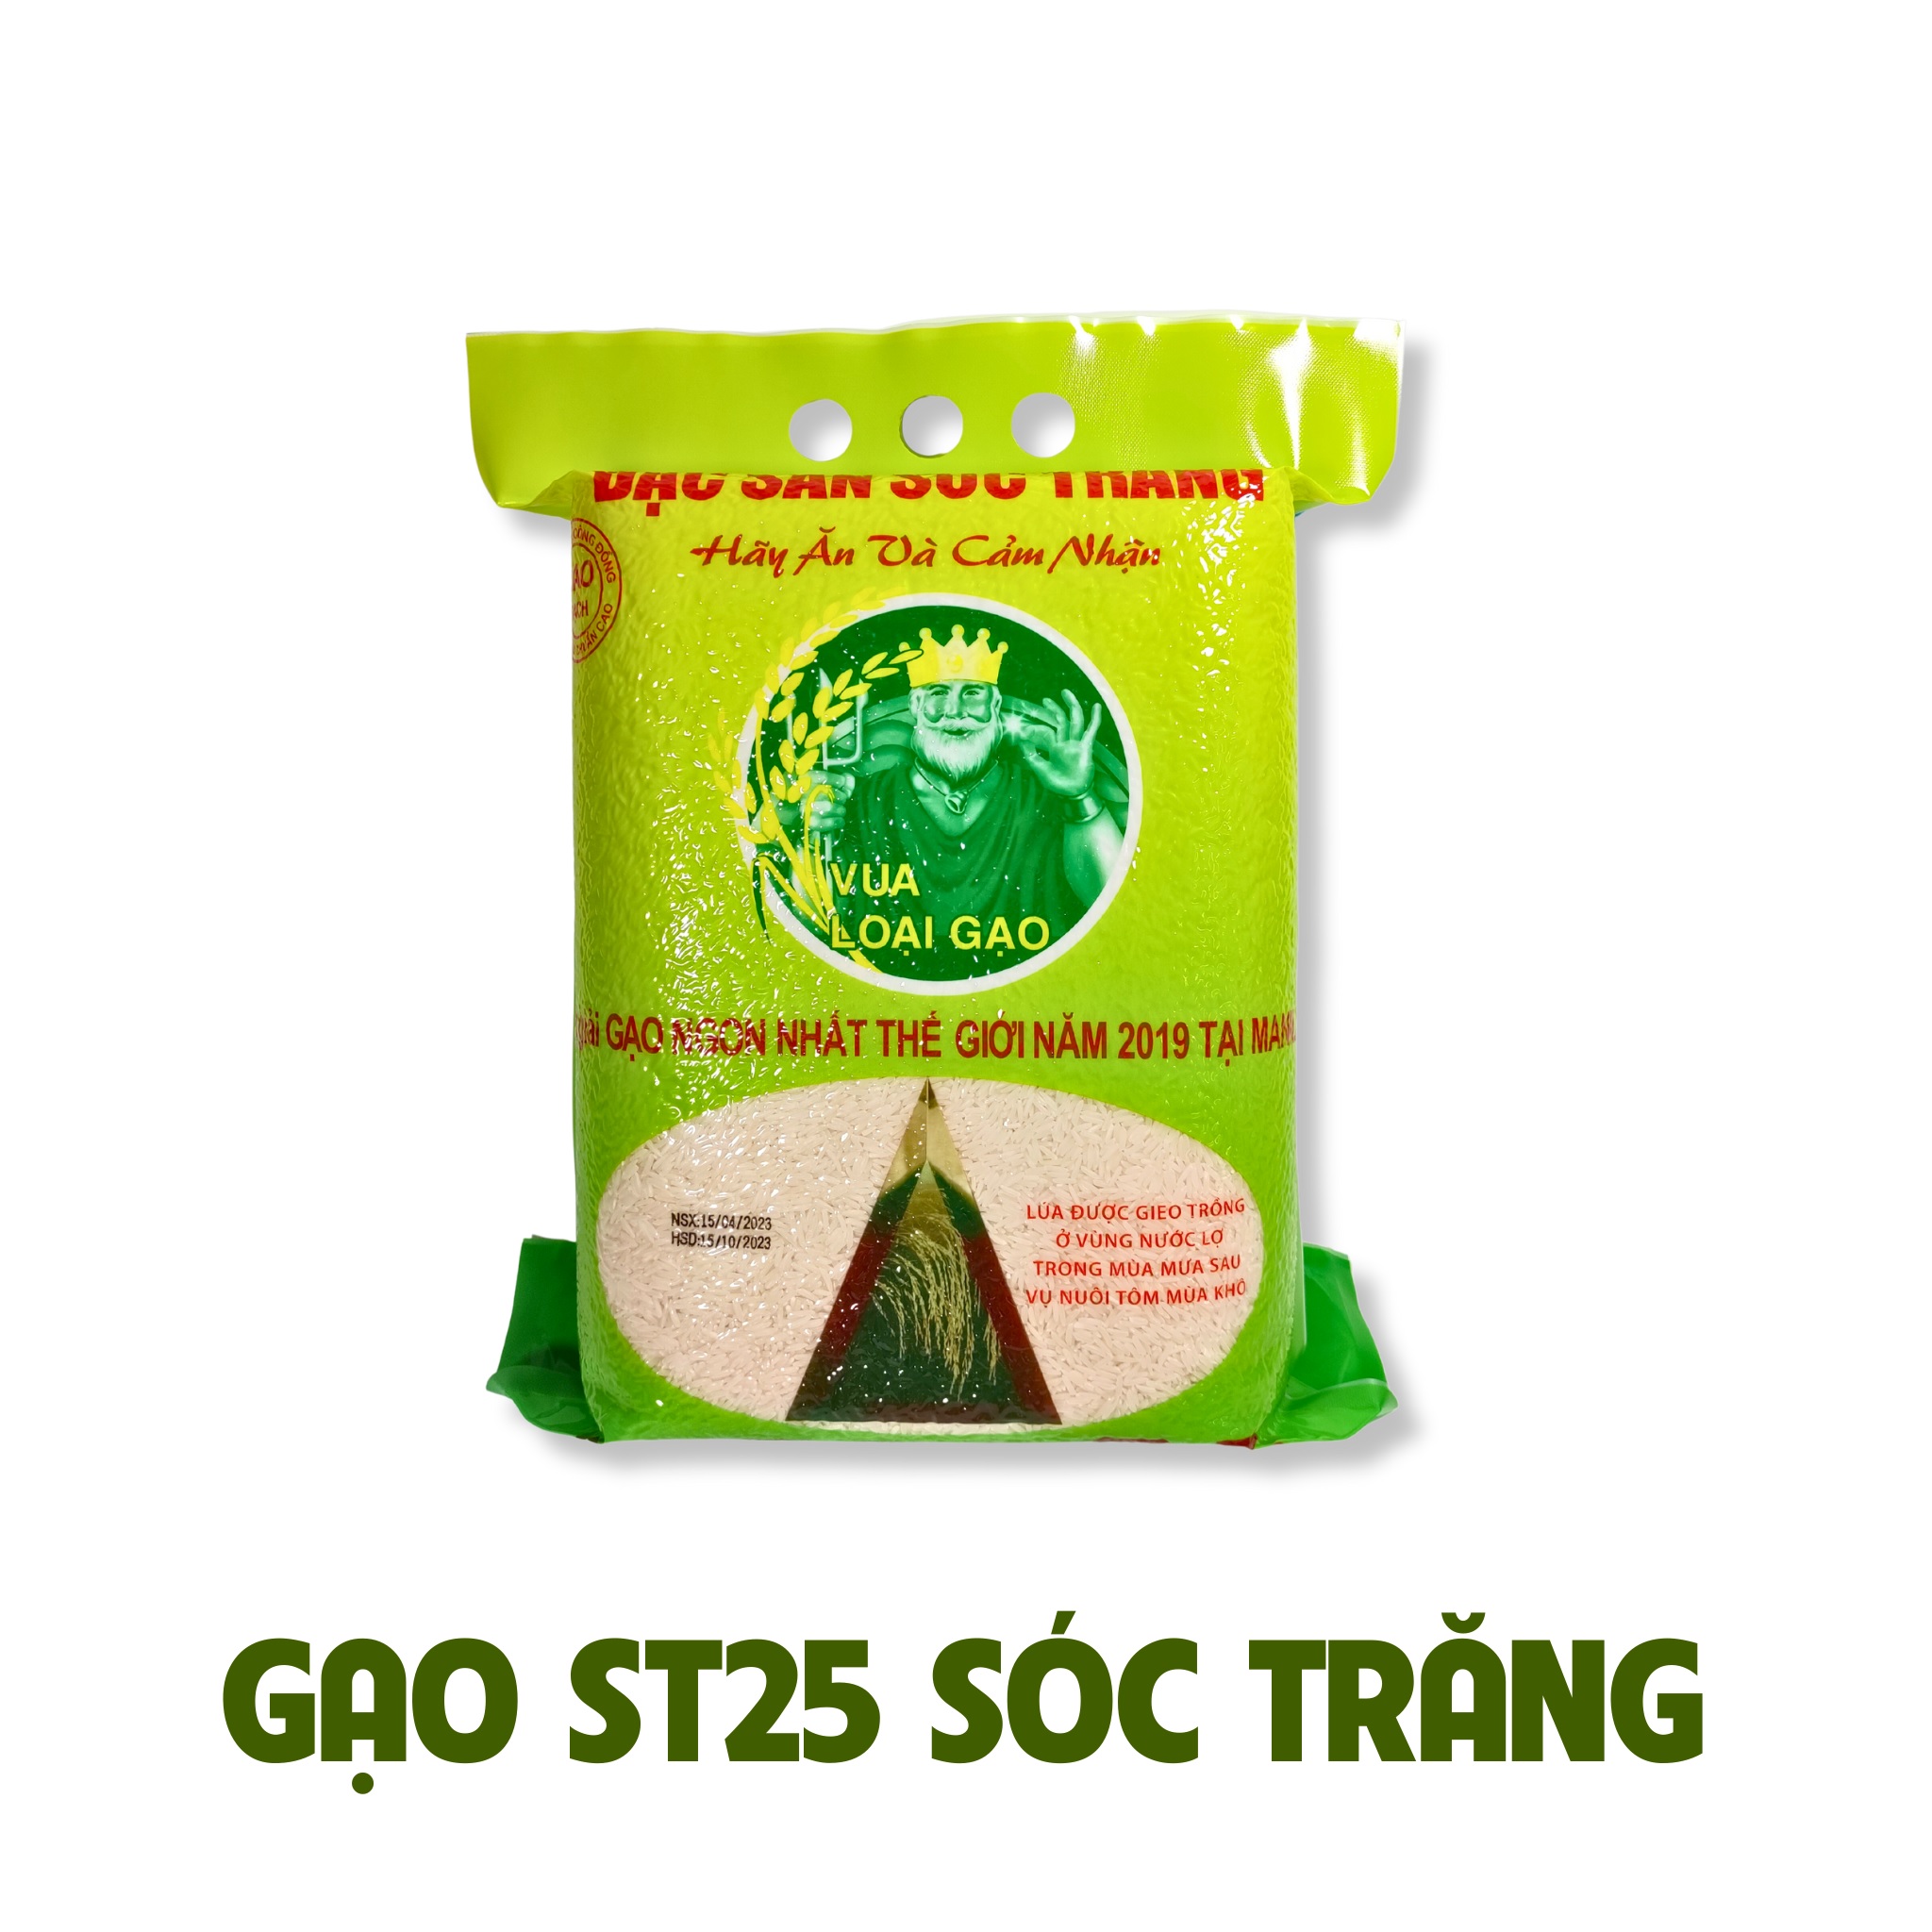 ST25 Rice Soc Trang vacuum - 5kg